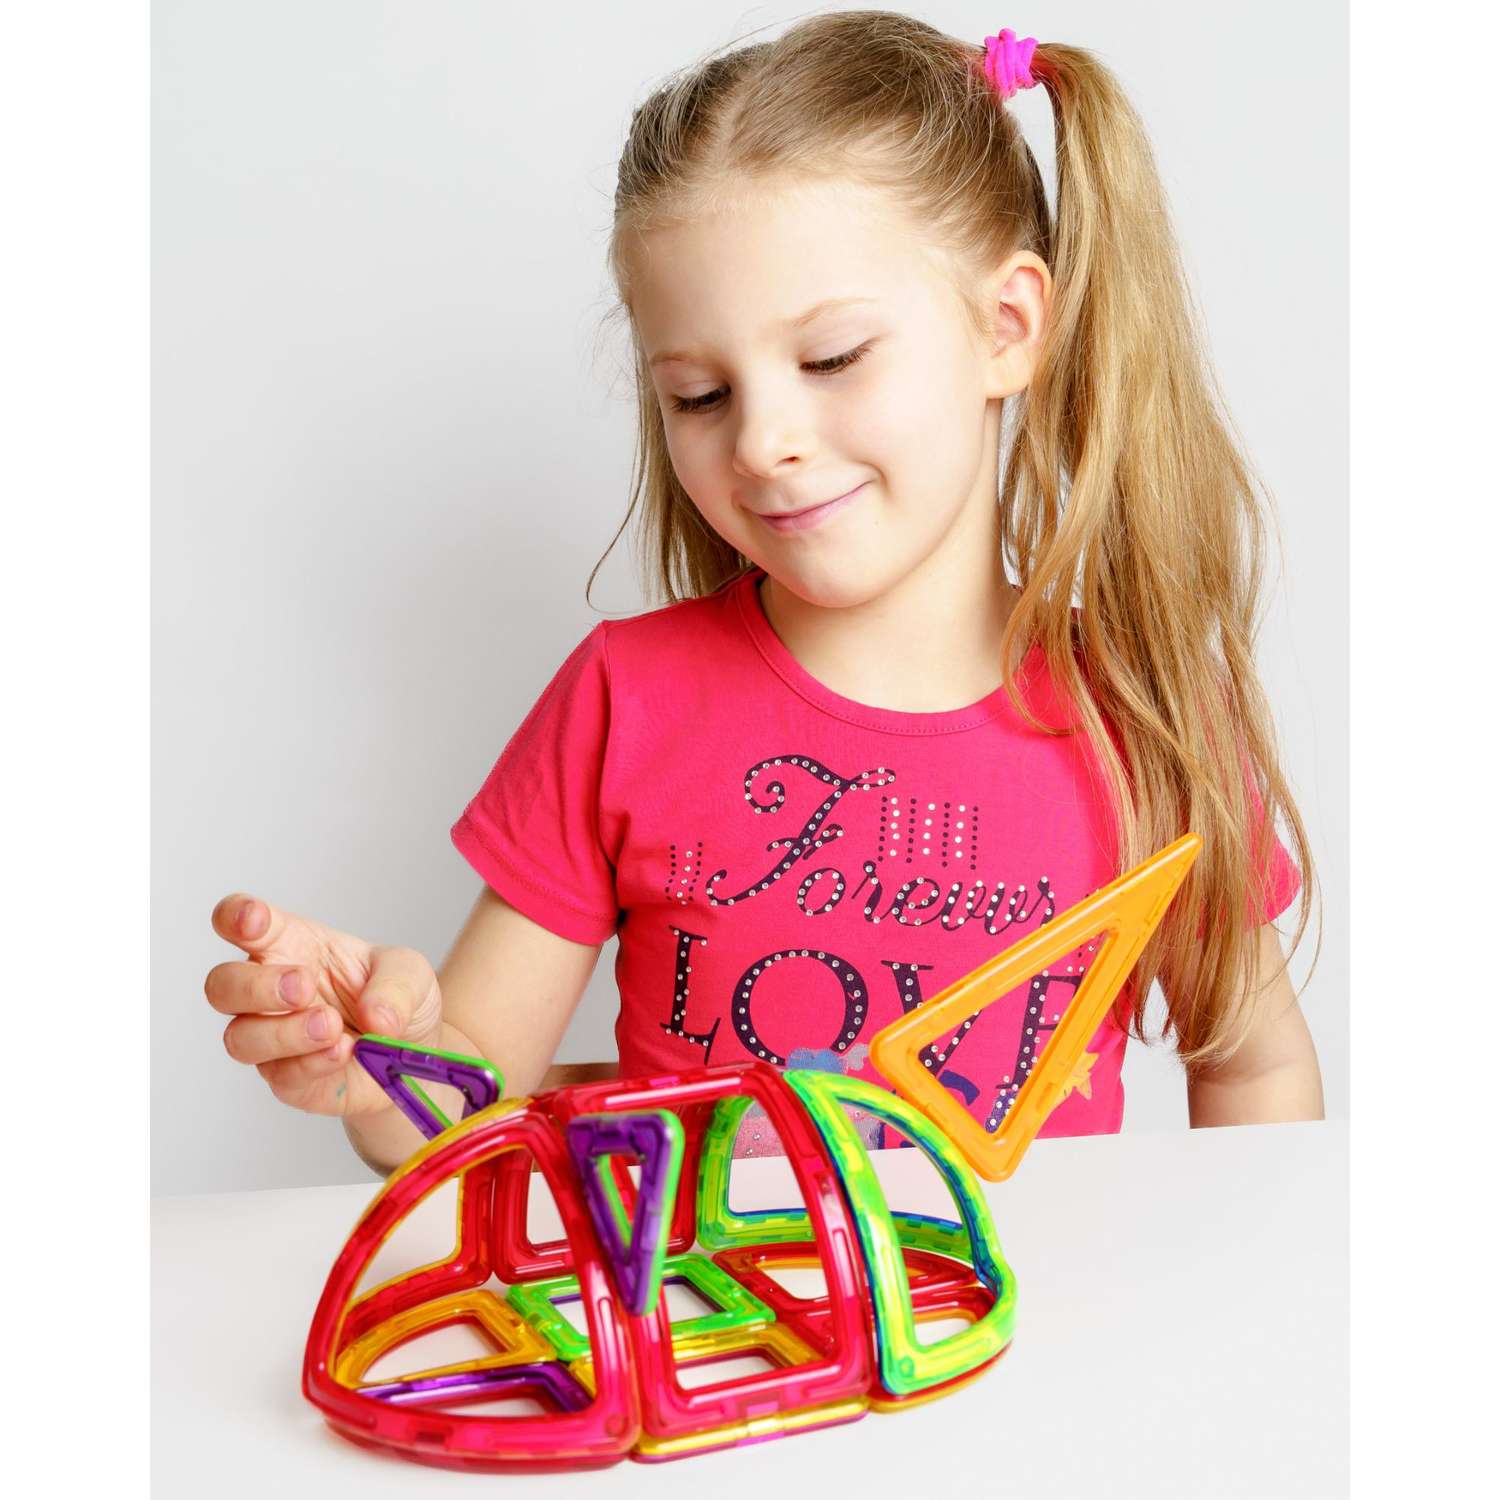 Конструктор Крибли Бу магнитный с крупными деталями сборный детская развивающая интересная игрушка от 3 лет - фото 2